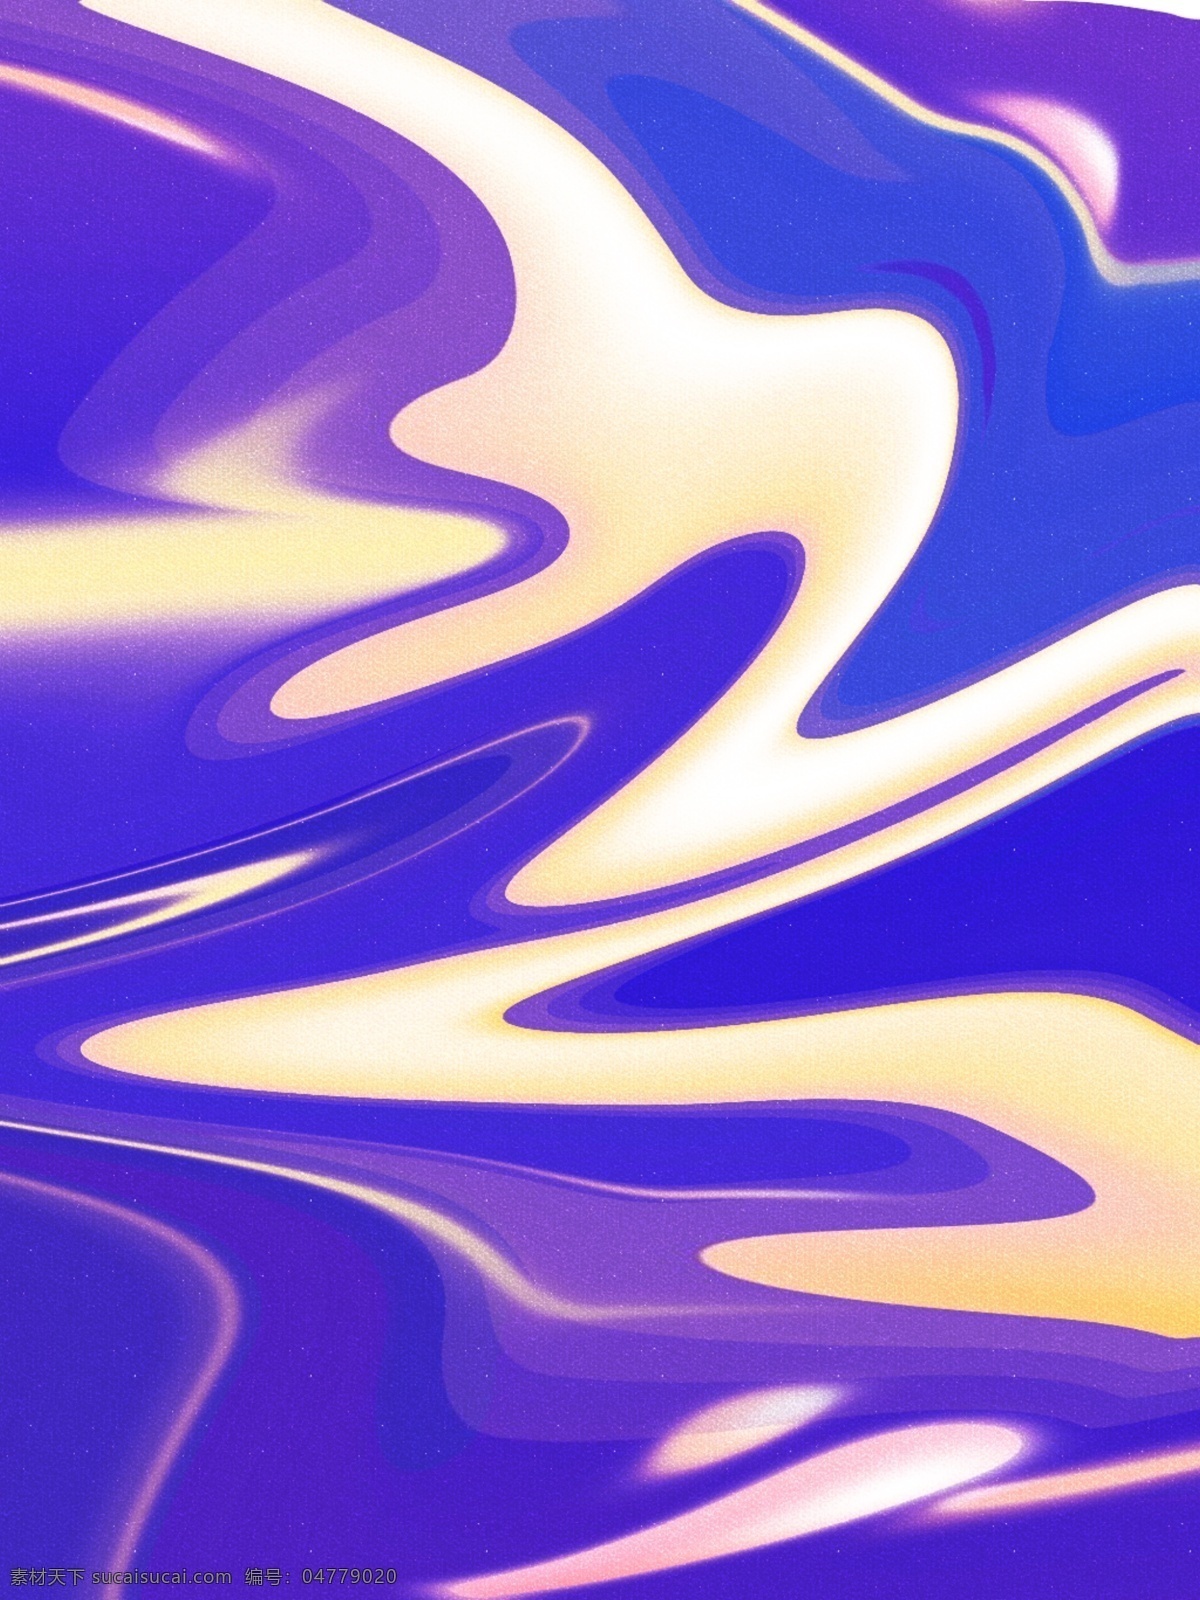 原创 紫色 大气 抽象 流体 质感 时尚 背景 抽象背景 金色背景 紫色背景 大气背景 活动背景 质感背景 时尚背景 广告背景